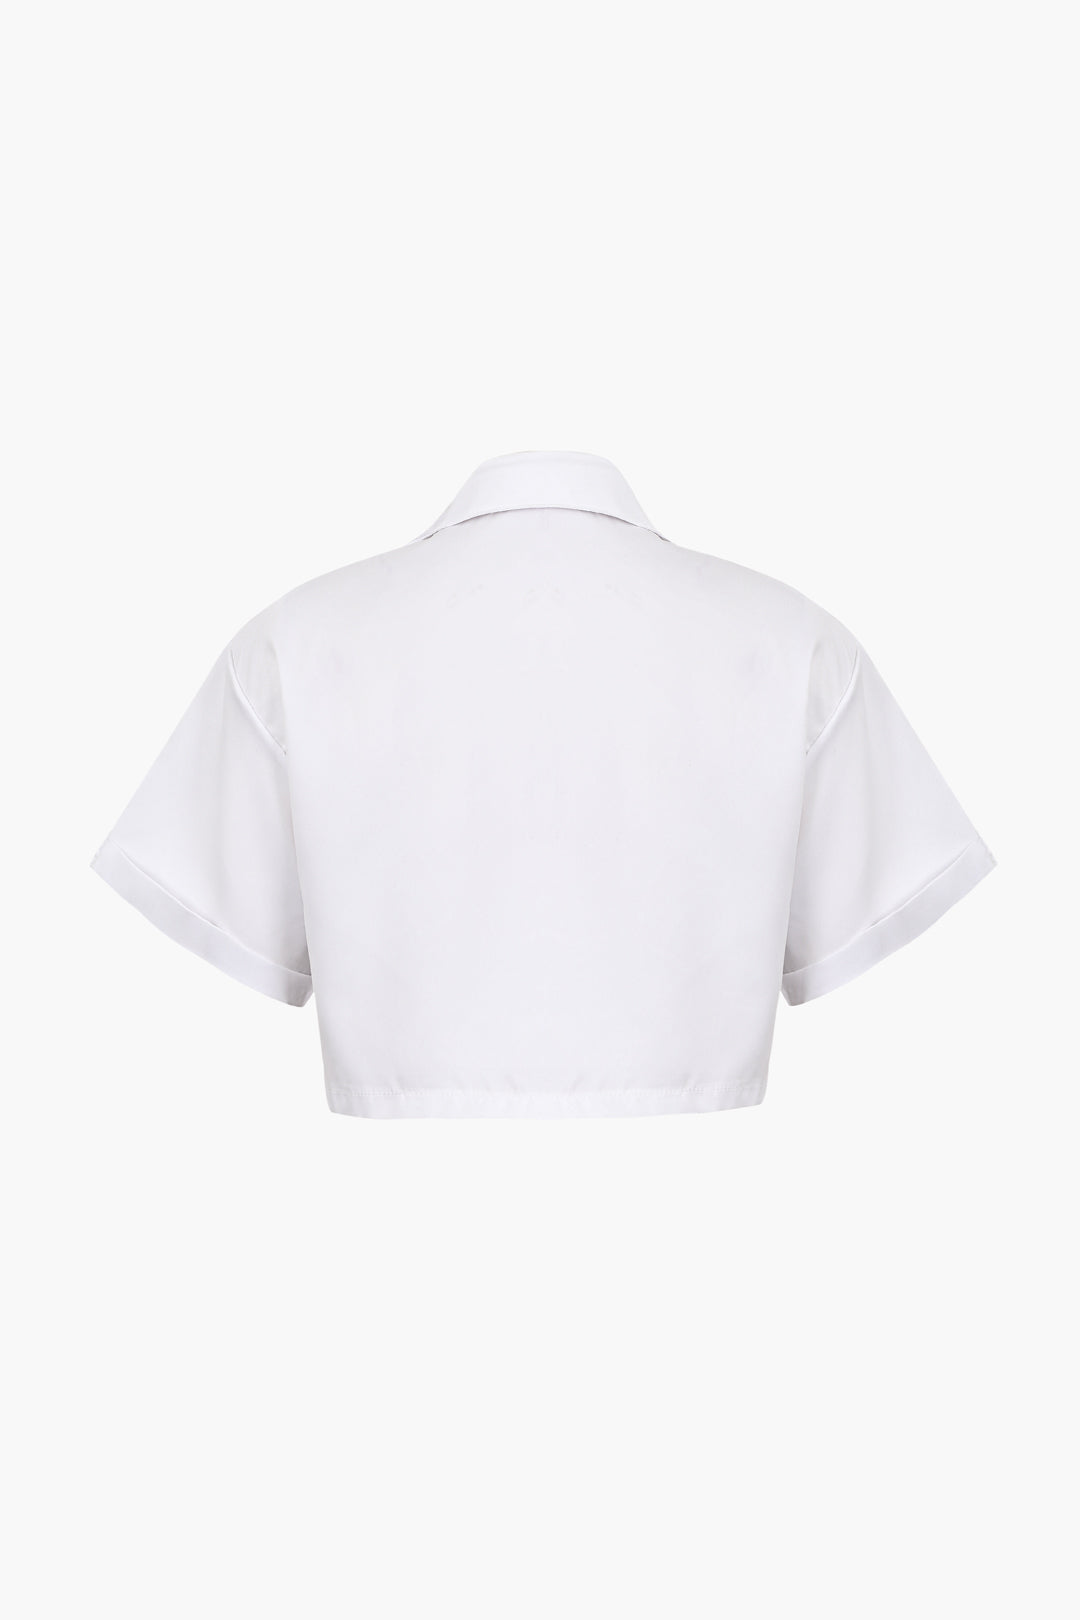 Podstawowa koszula z klapką i kieszeniami, wywijanym brzegiem